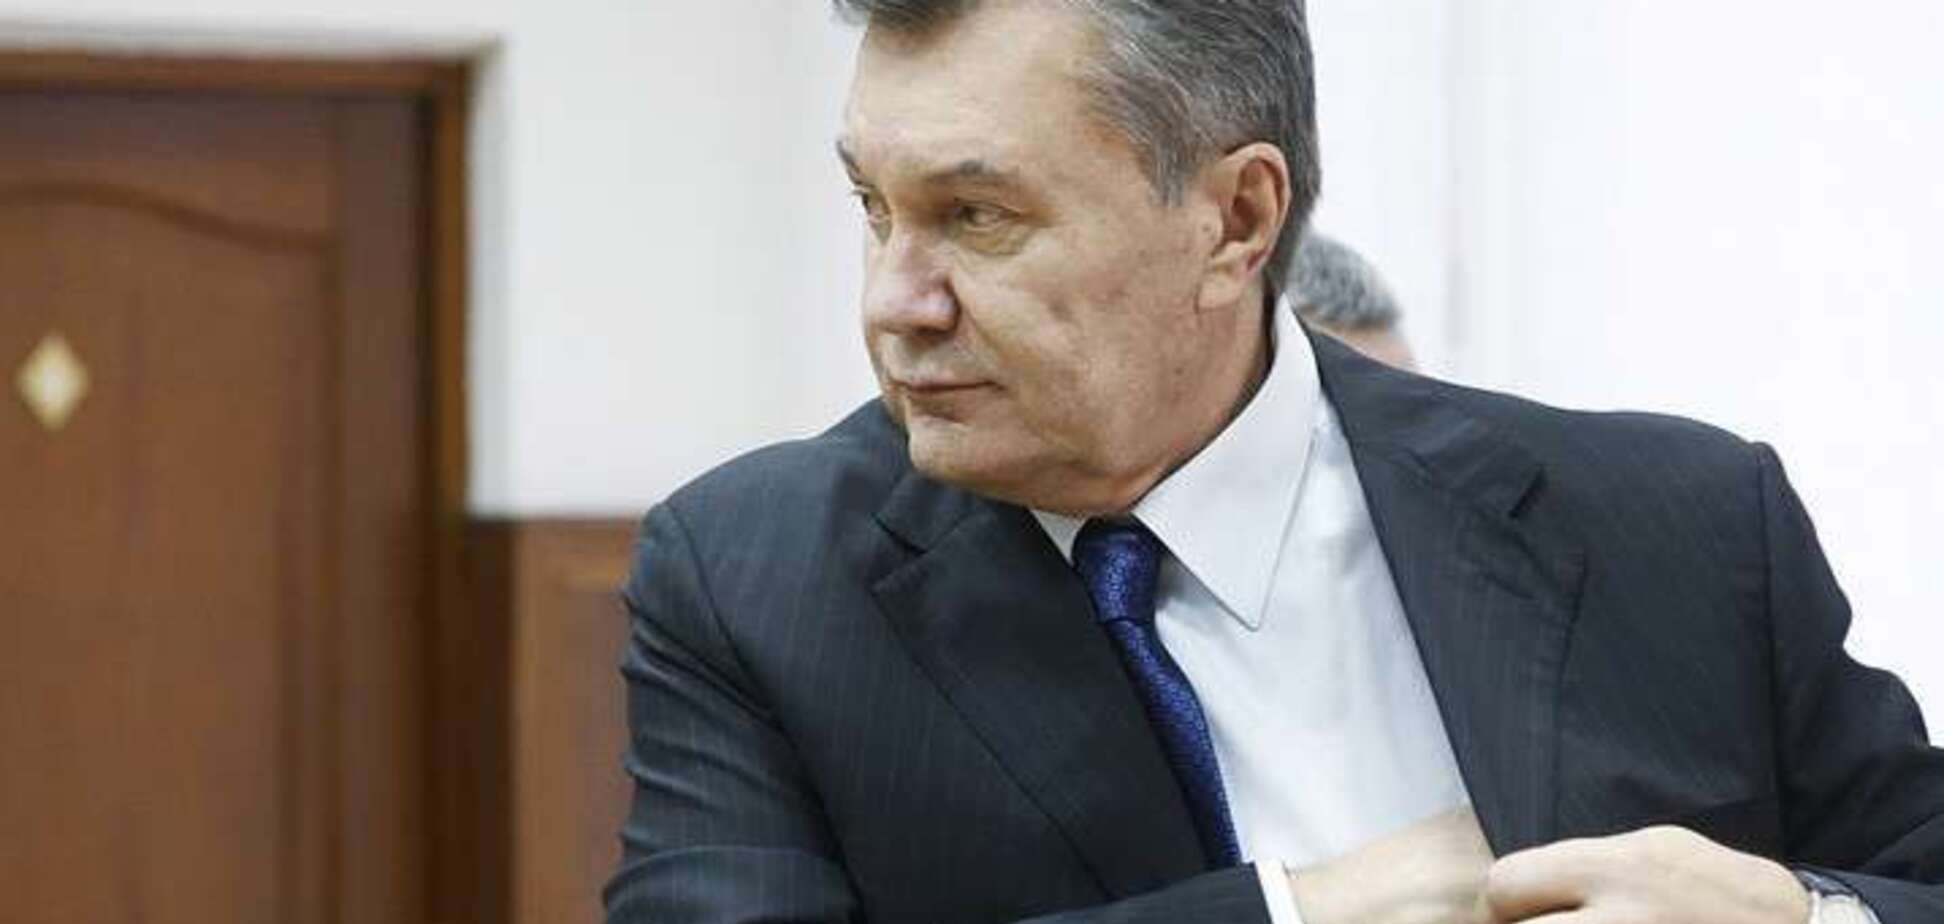 Безкоштовного адвоката Януковича викрили у прискореному вивченні справи